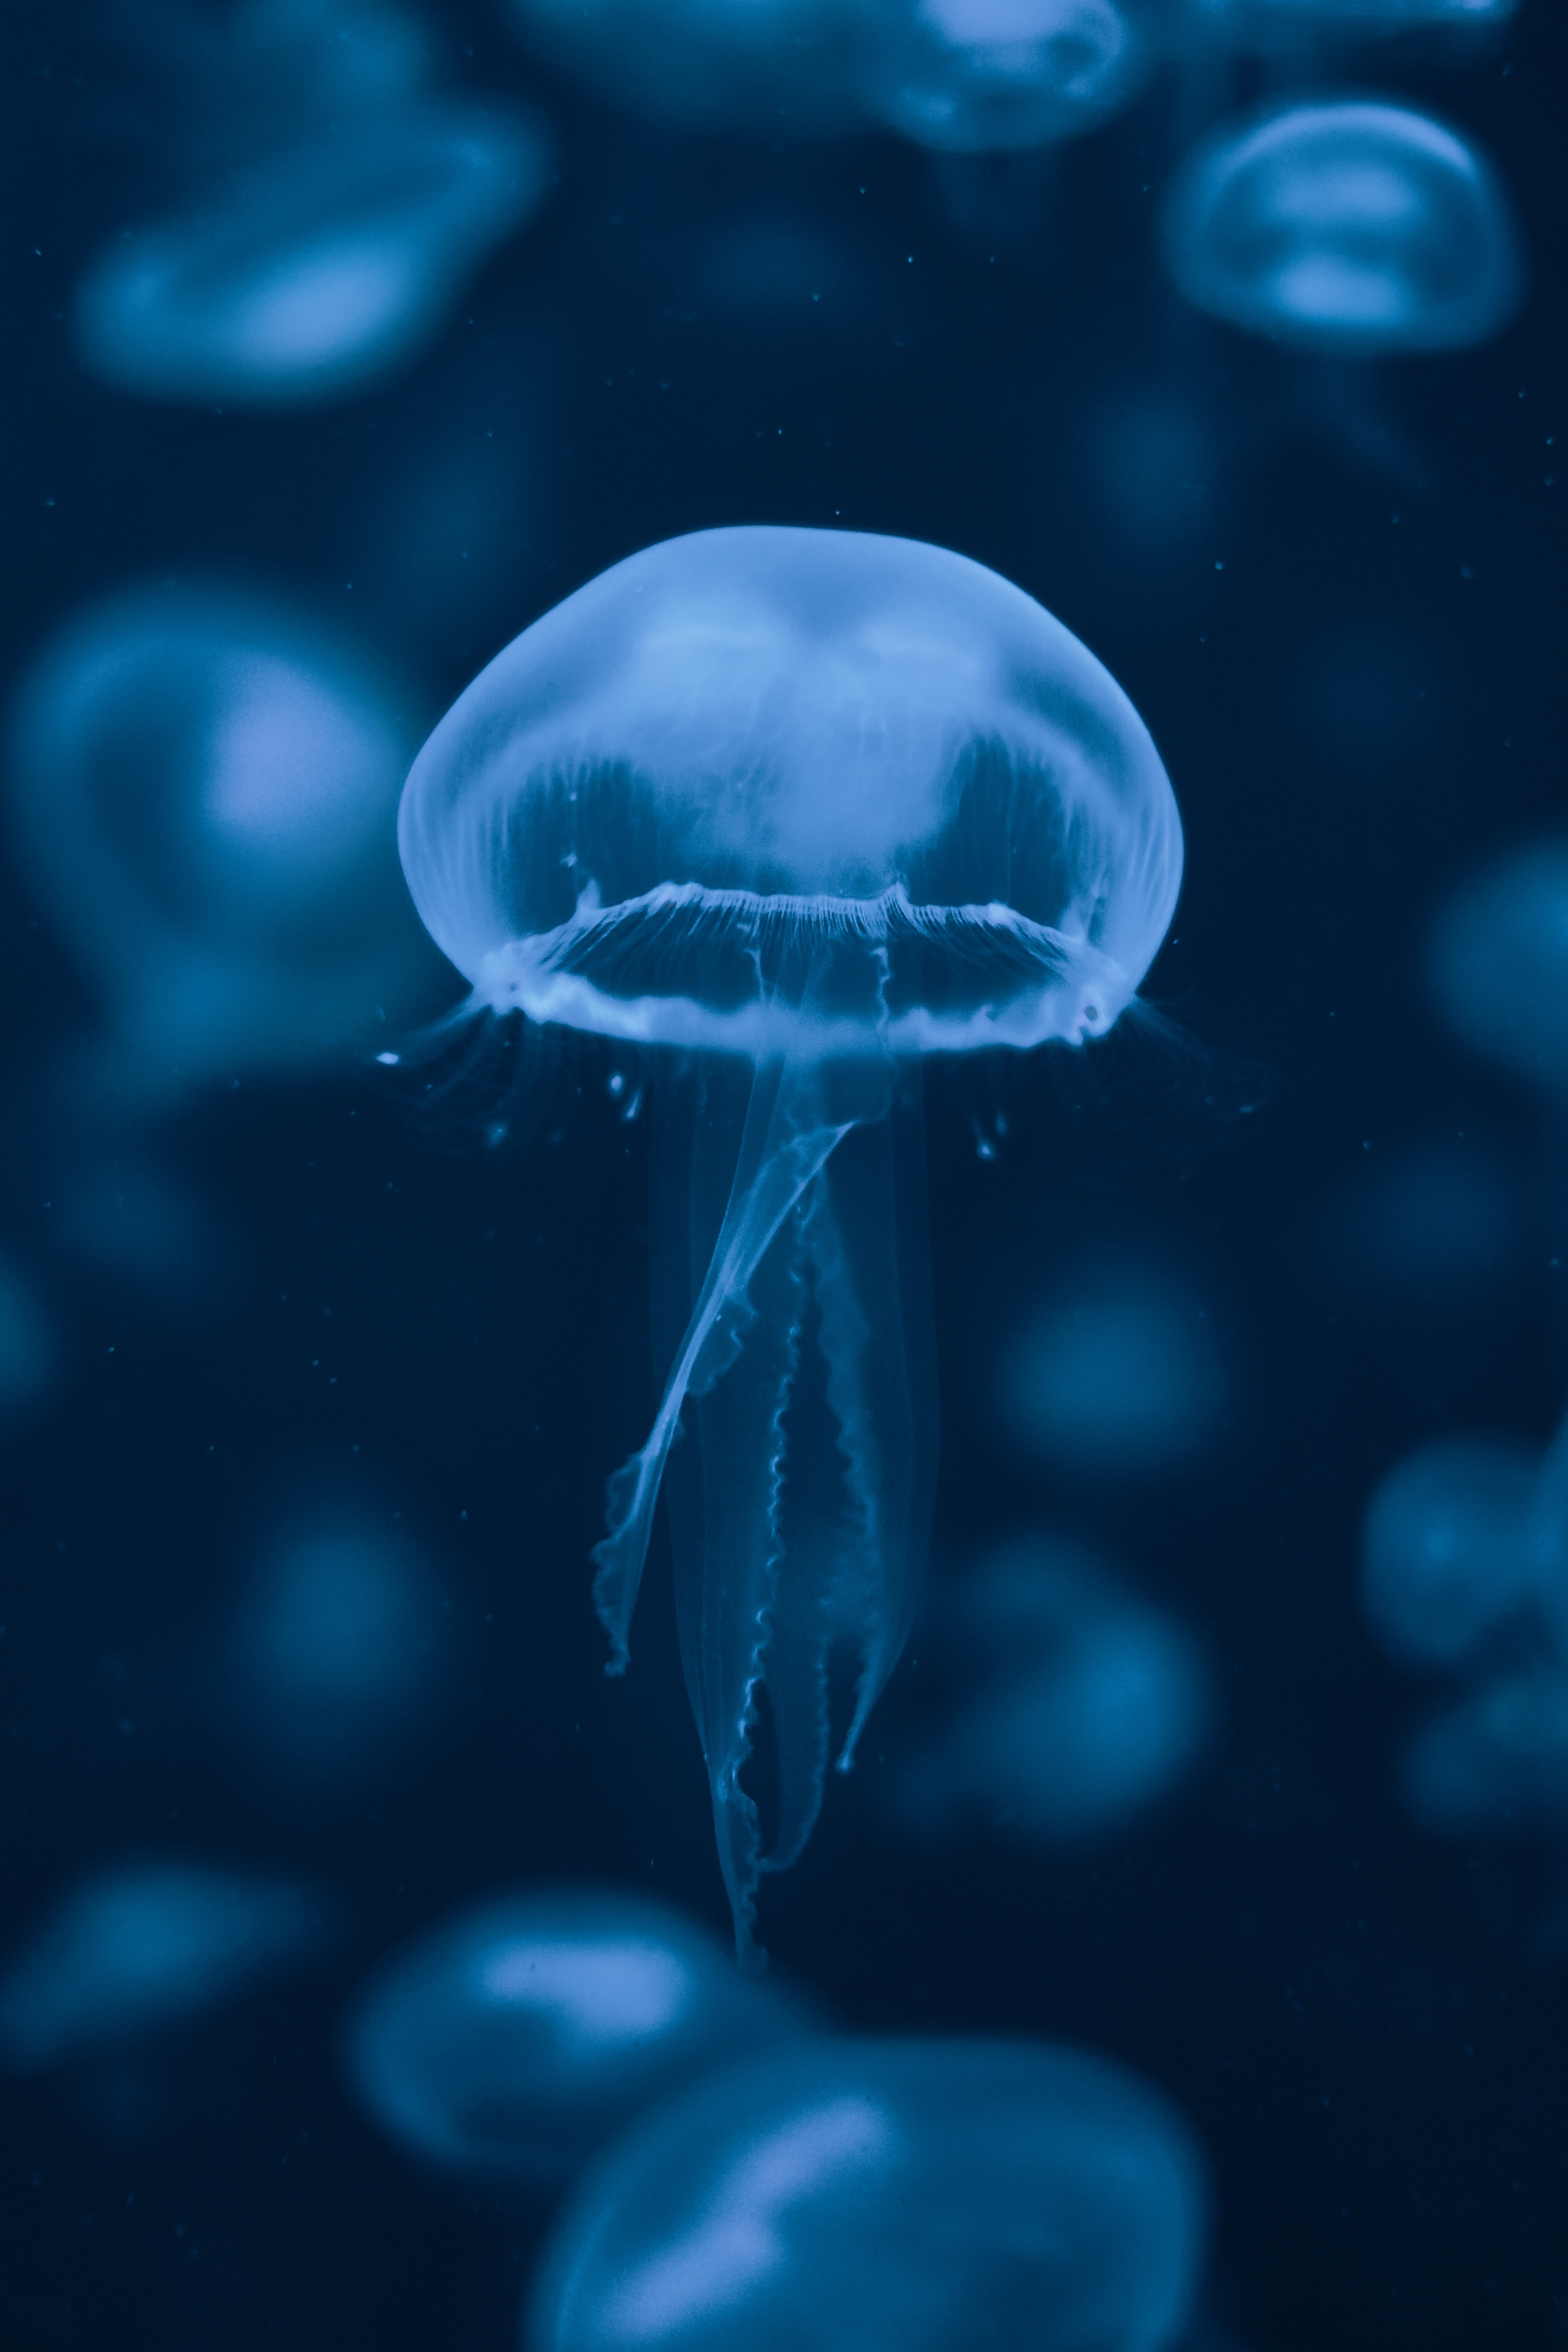 jellyfish, swimming, animals, blue, underwater world, tentacles